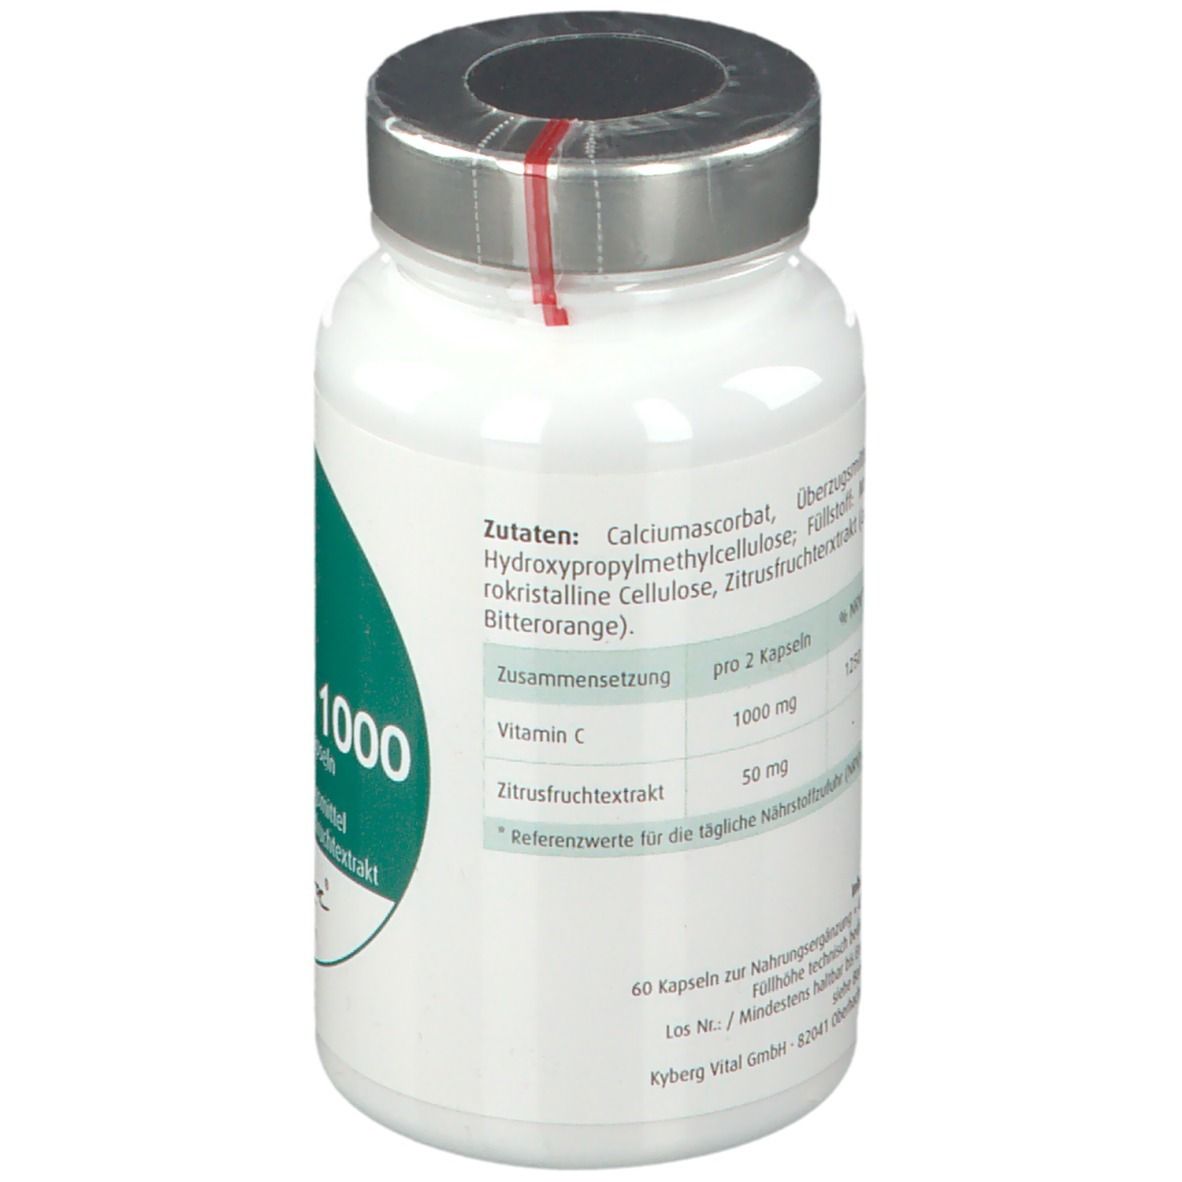 OrthoDoc® Vitamin C 1000